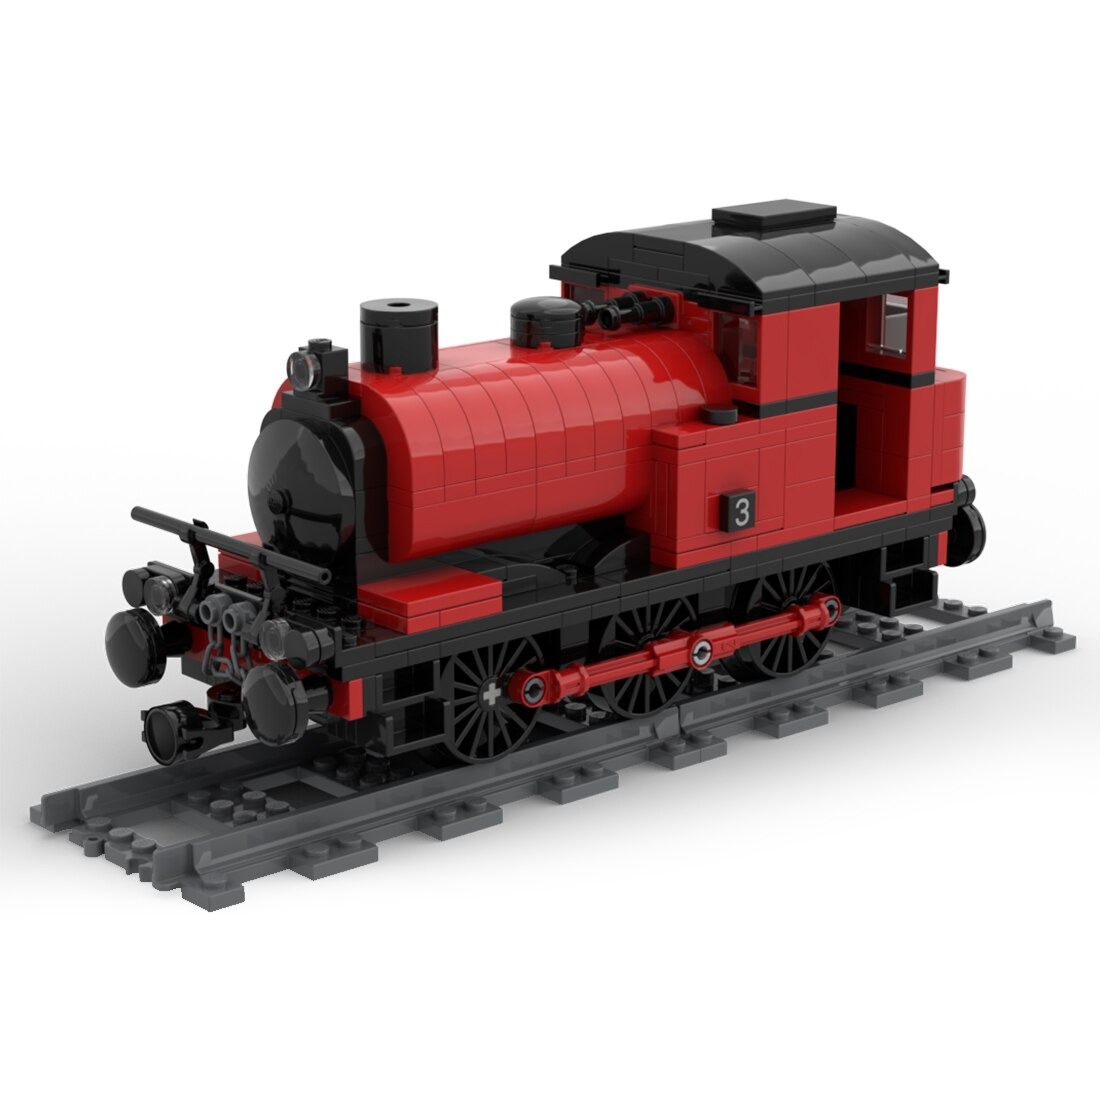 Saddle Tank Engine Train Moc 42439 5